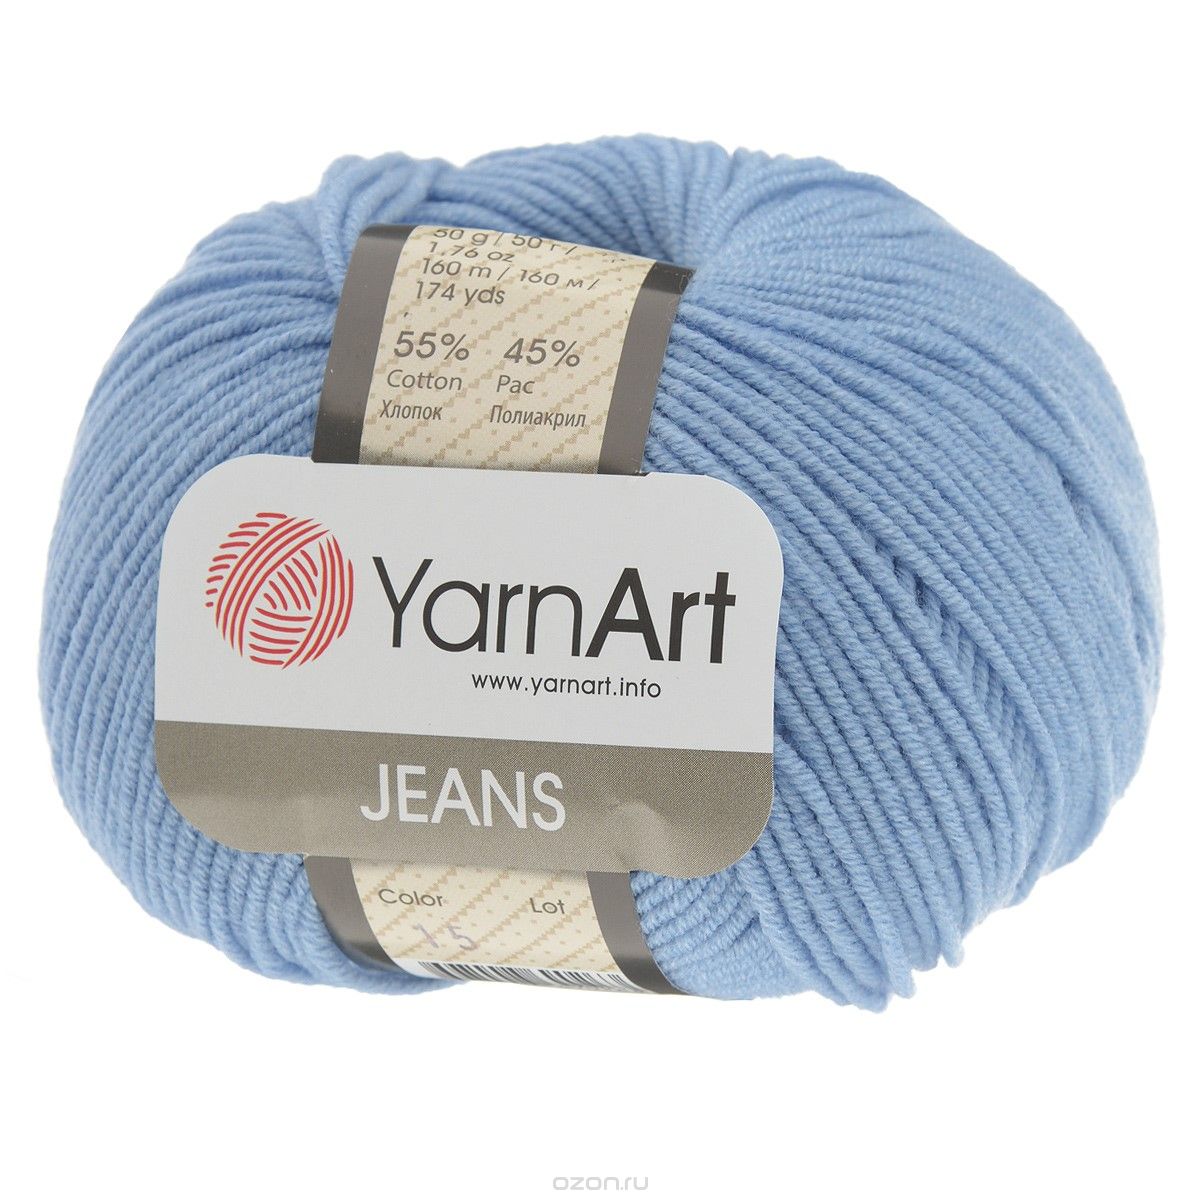 jeans_yarnart Pryaja Jeans YarnArt | Kypit vyazanie Yanart Djins v internet-magazine Happy-Hobby.ru